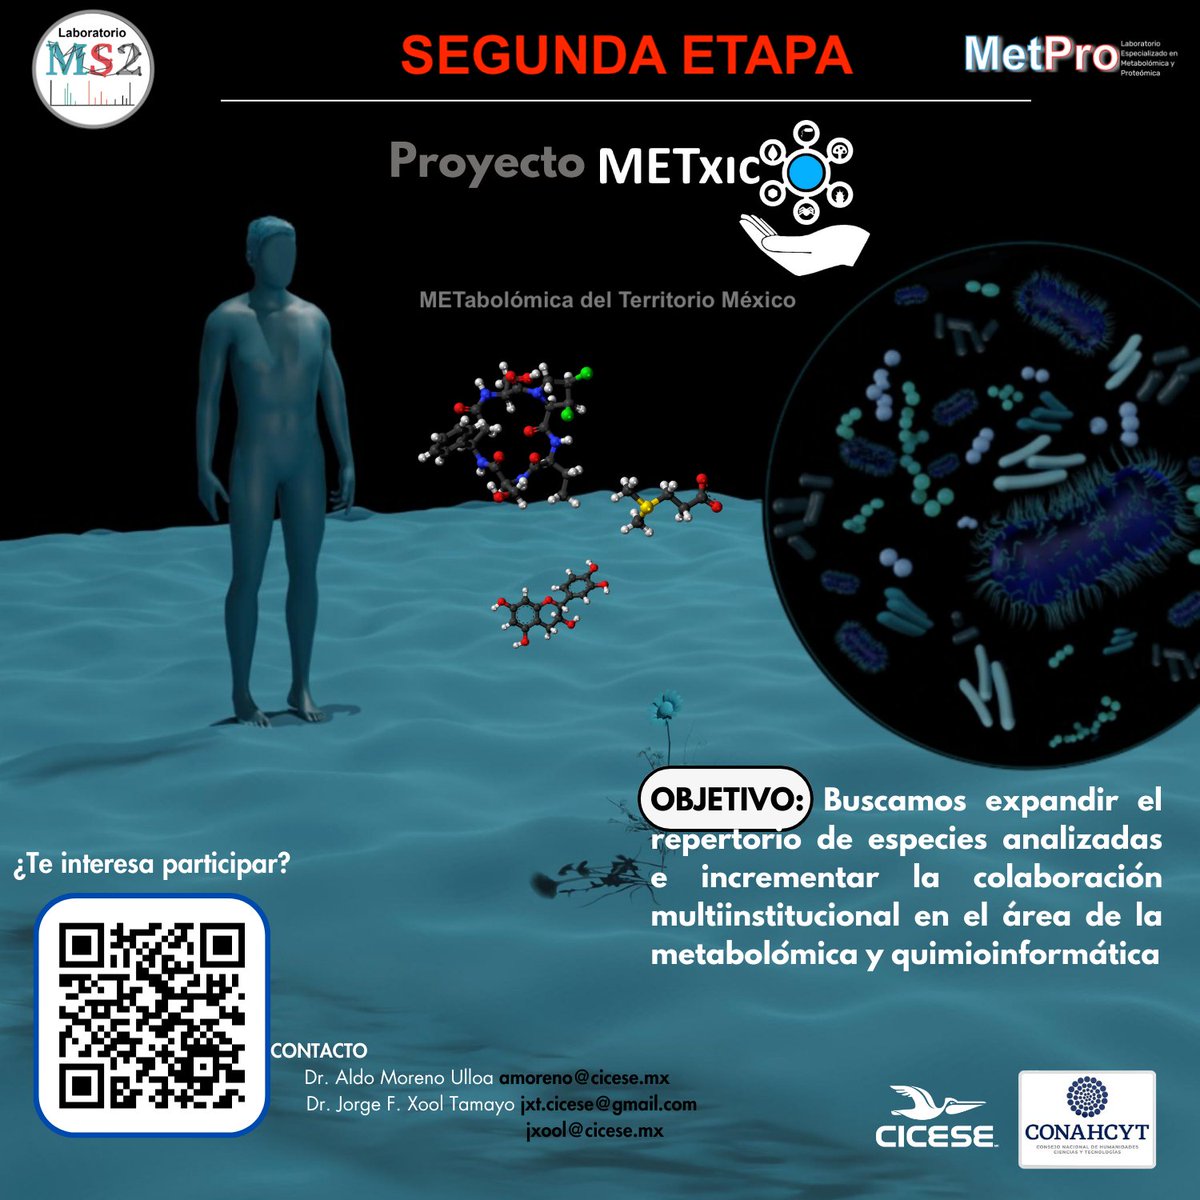 Iniciamos la SEGUNDA ETAPA del #ProyectoMETxico

Buscamos expandir nuestro conocimiento sobre los #metabolomas de especies marinas y terrestres en México
#Metabolomics #Massspectrometry #chemoinformatics

Te interesa participar,  contáctanos
Mas info en: sites.google.com/d/1RisZhJHsuDA…